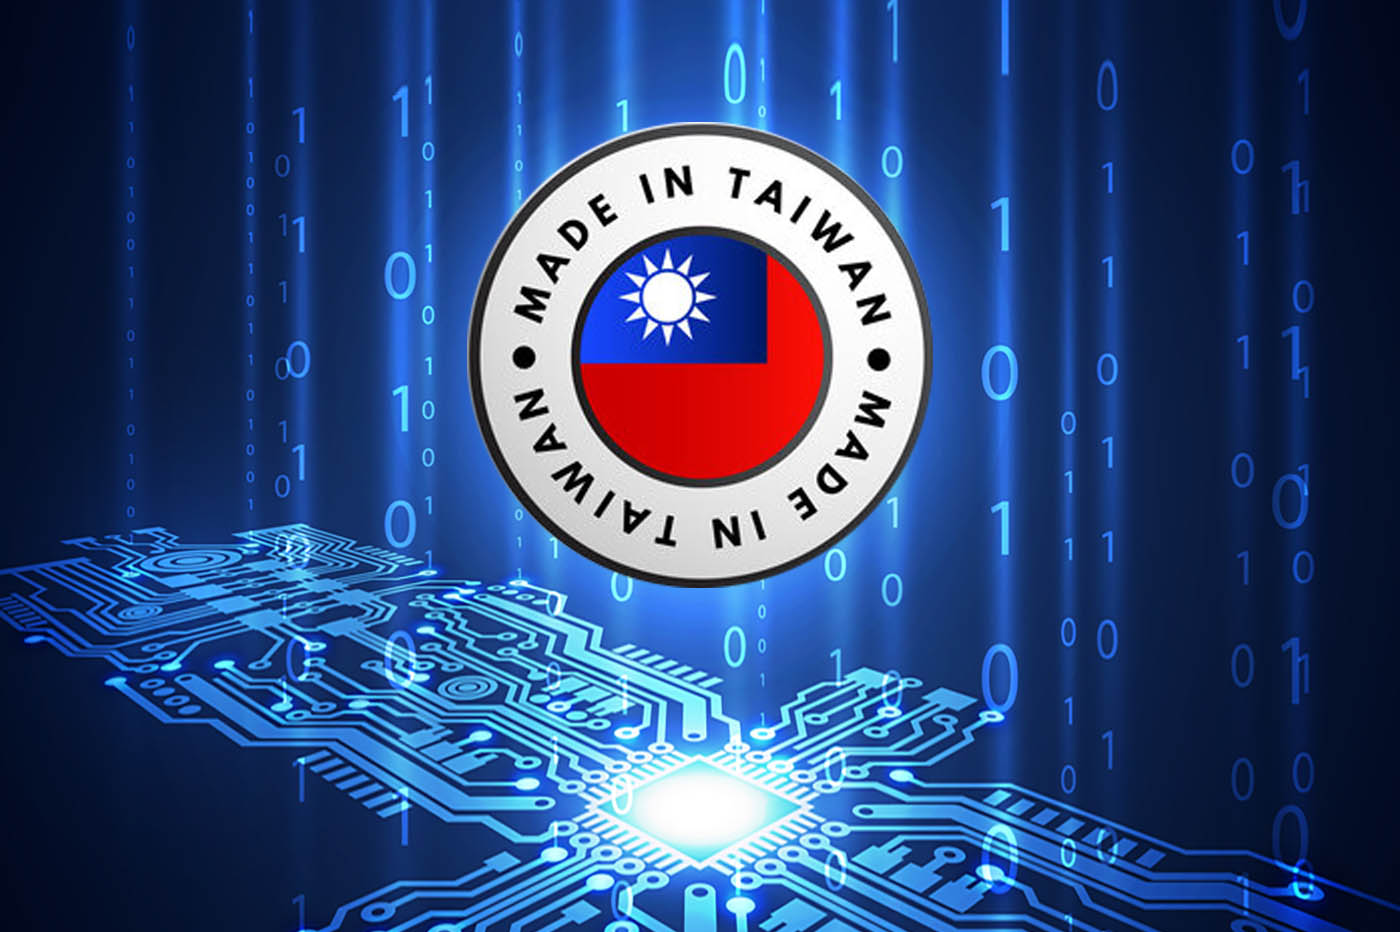 Pourquoi l’invasion de Taïwan par la Chine serait un désastre pour le monde de la tech